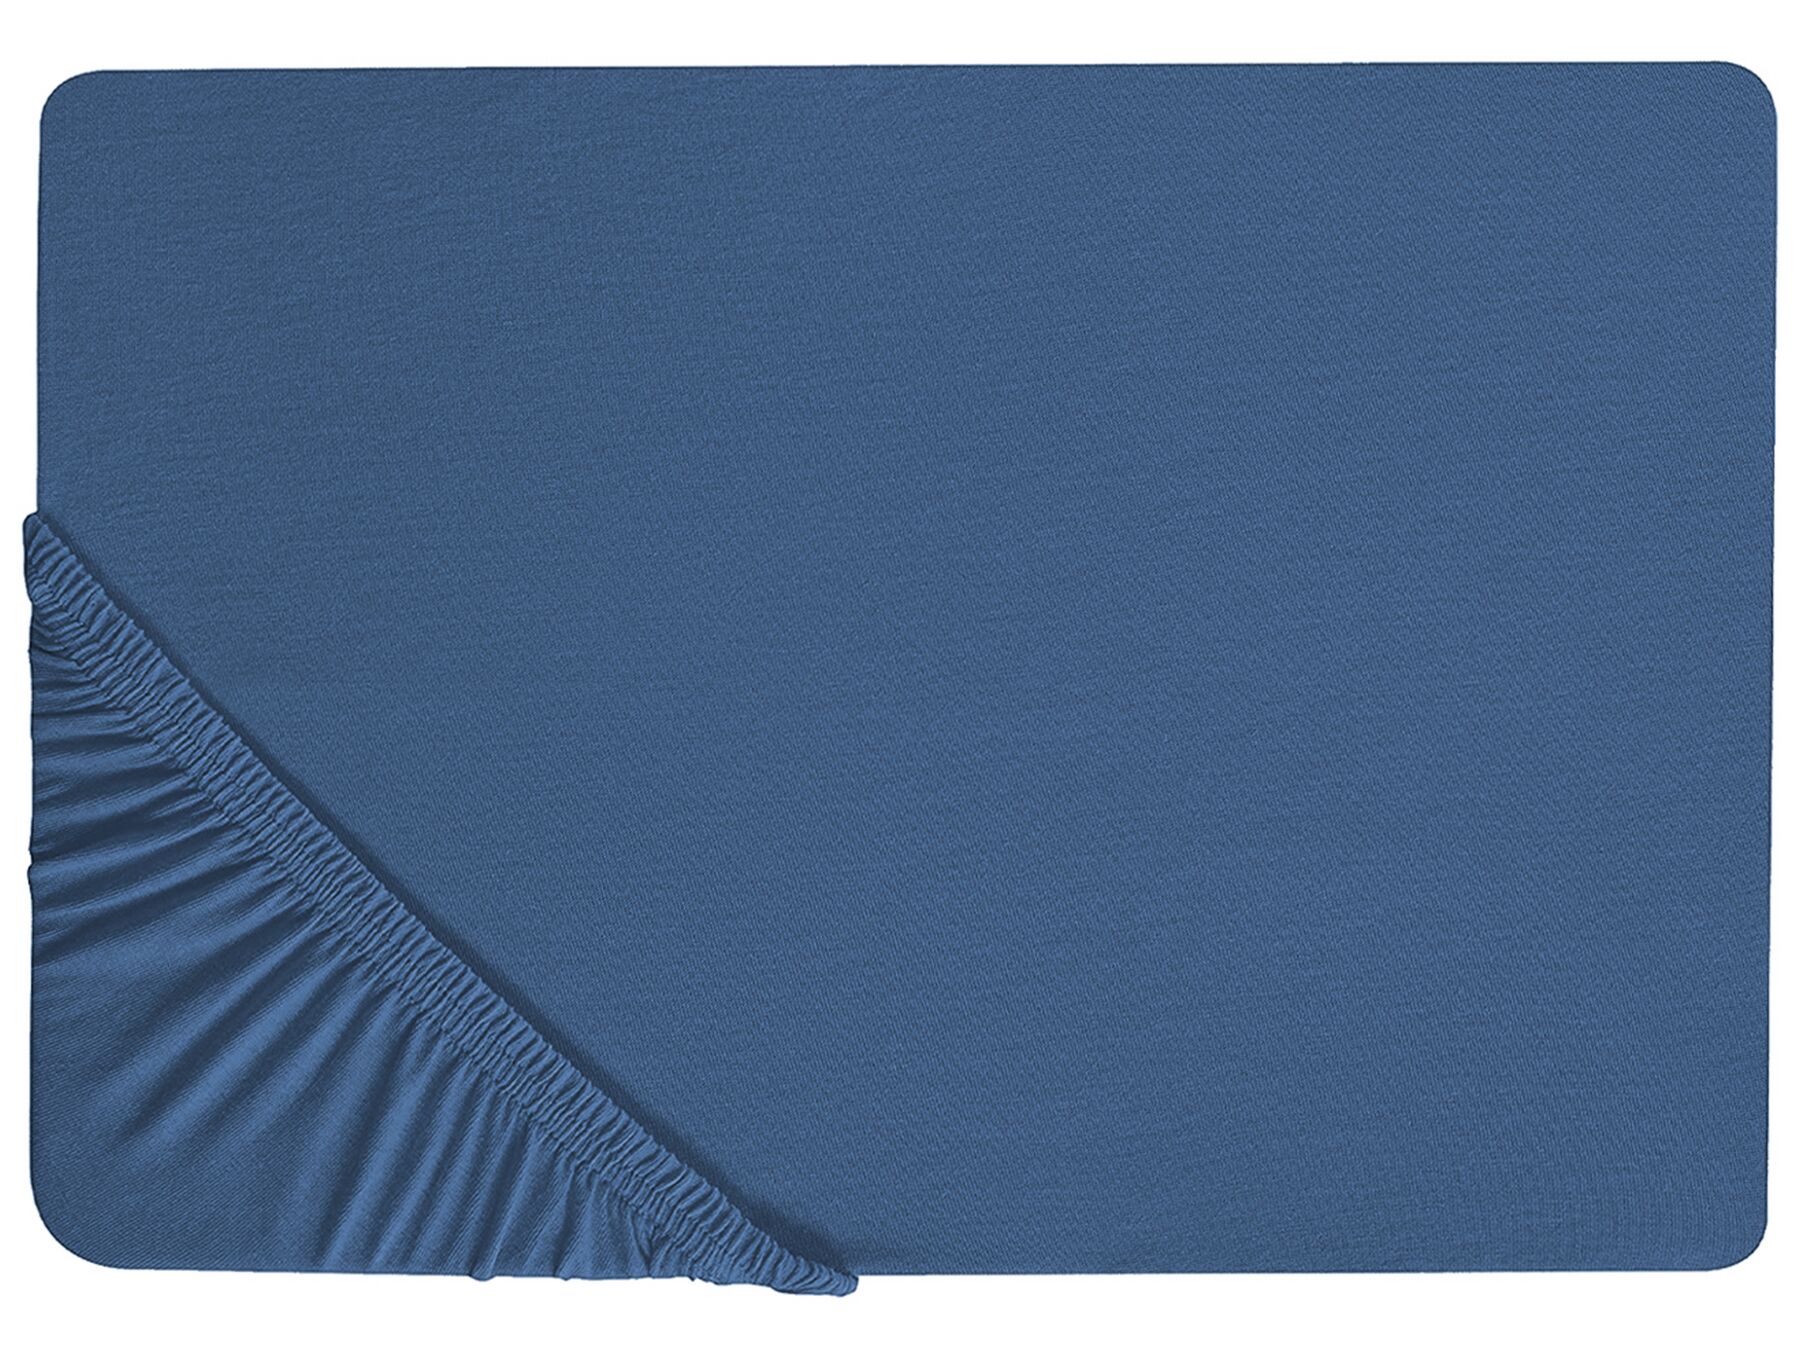 Bavlněné prostěradlo 90 x 200 cm modré JANBU_845239